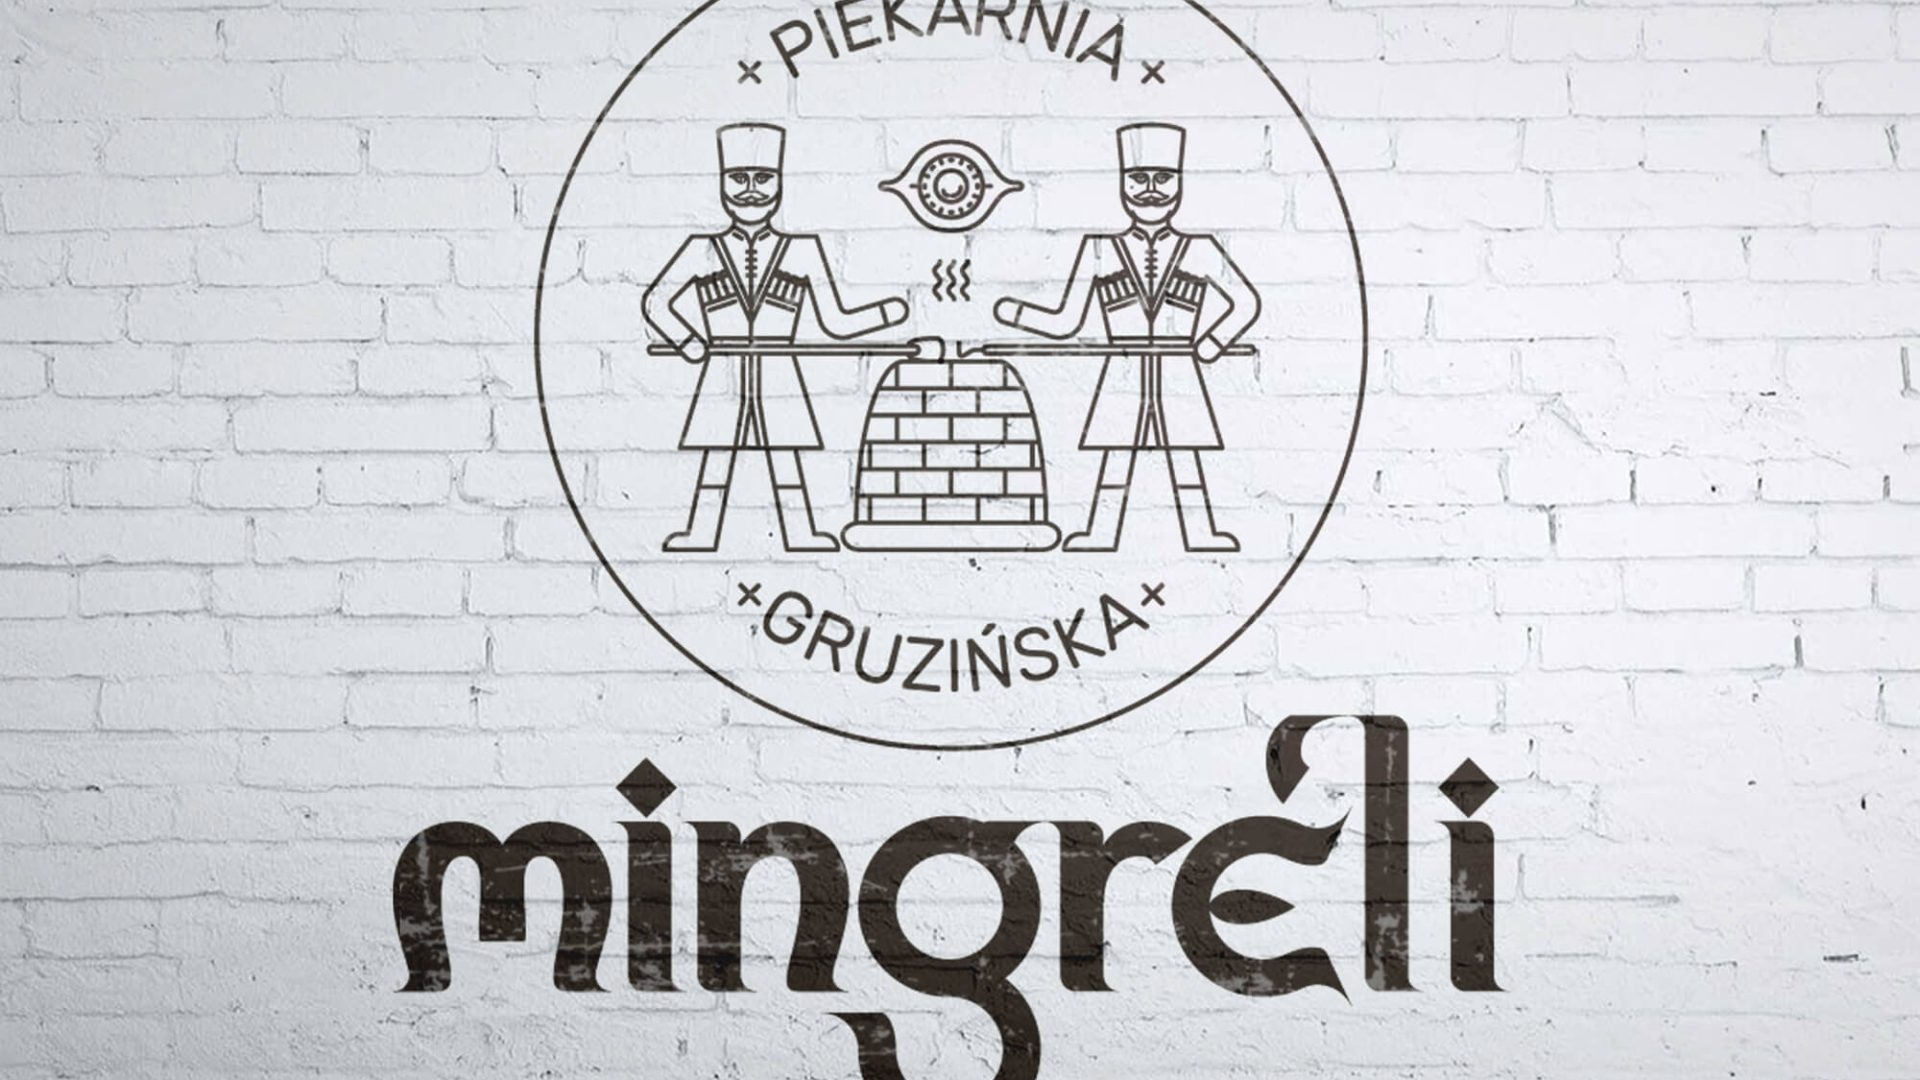 MINGRELI Piekarnia Gruzińska - logo mur biała cegła